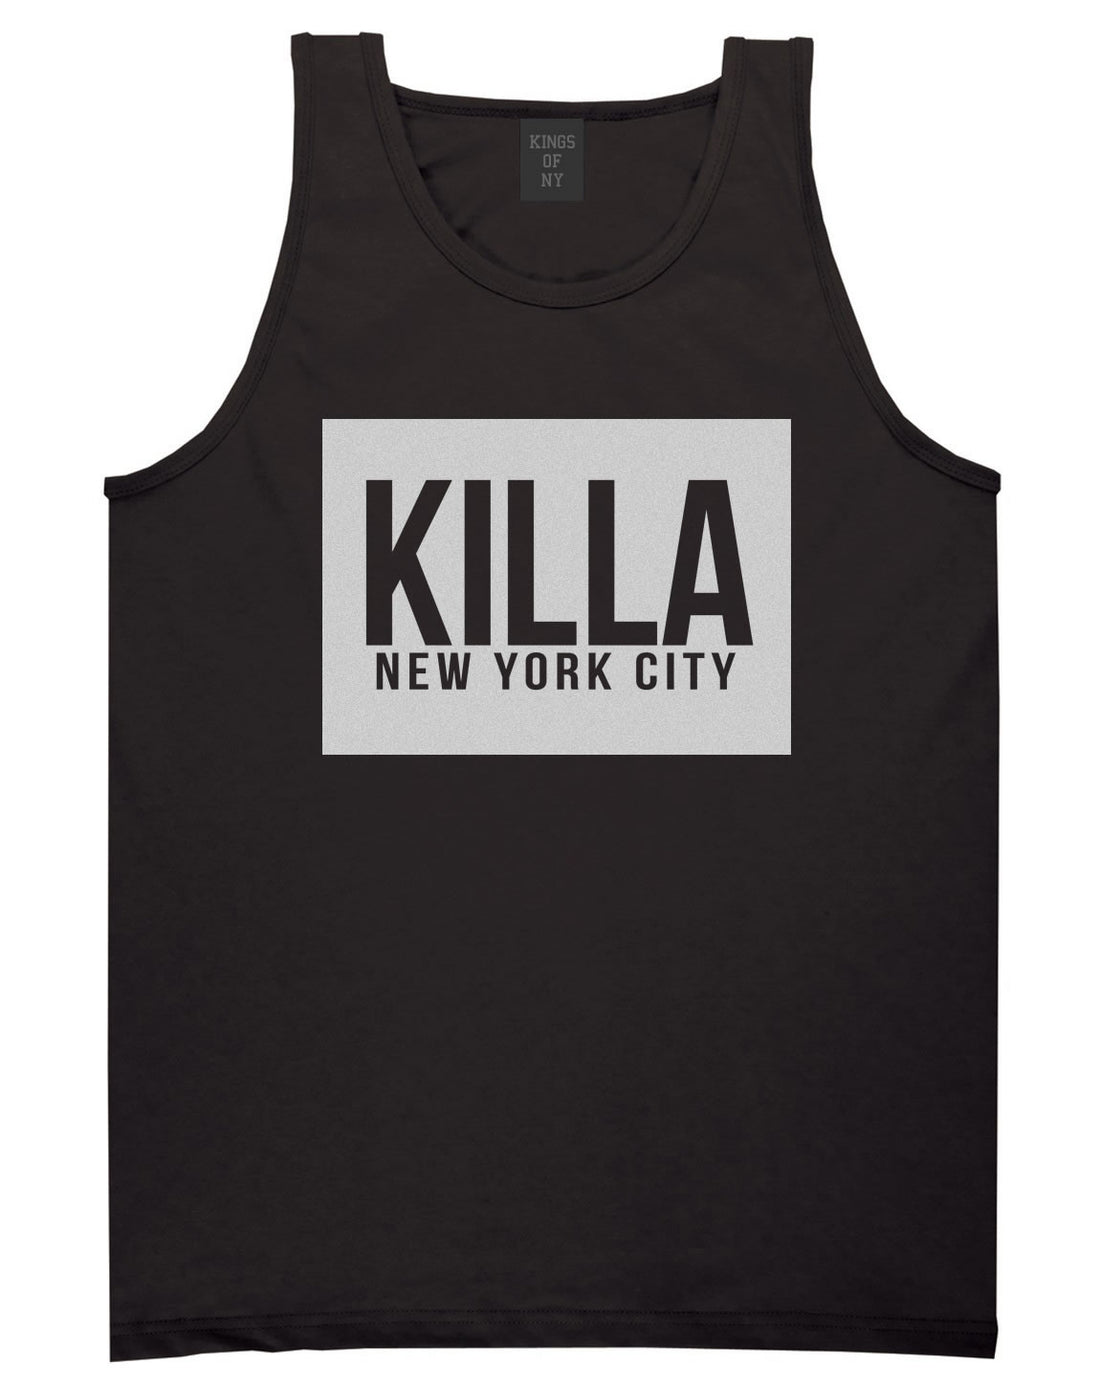 Killa New York City Harlem Tank Top in Black by Kings Of NY